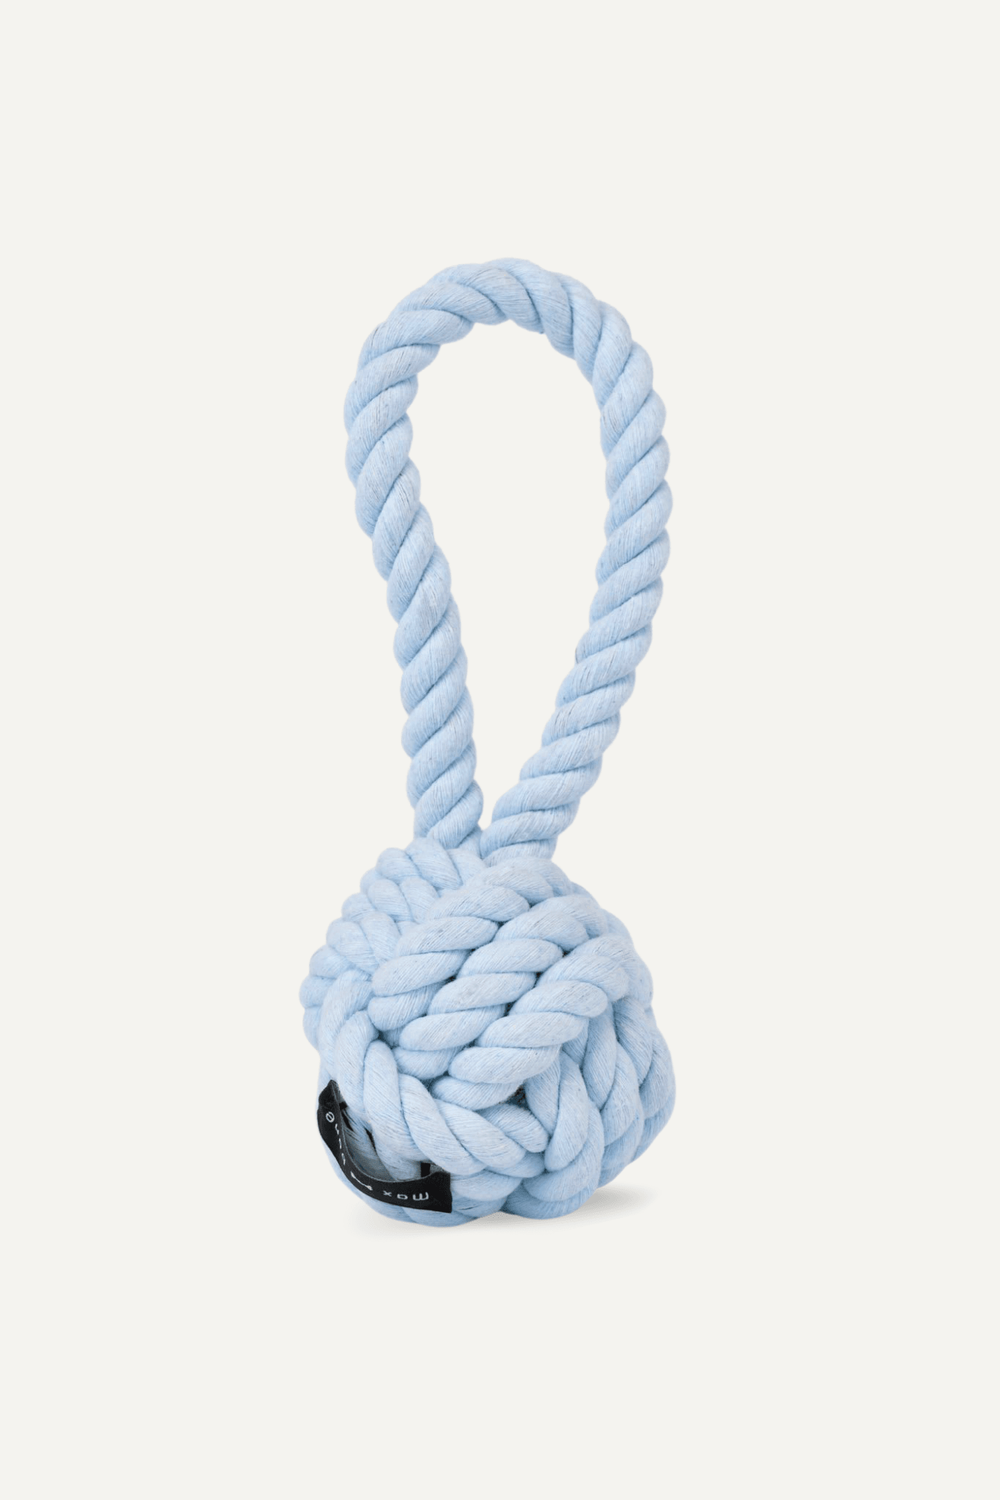 Rope Dog Toy: Blue